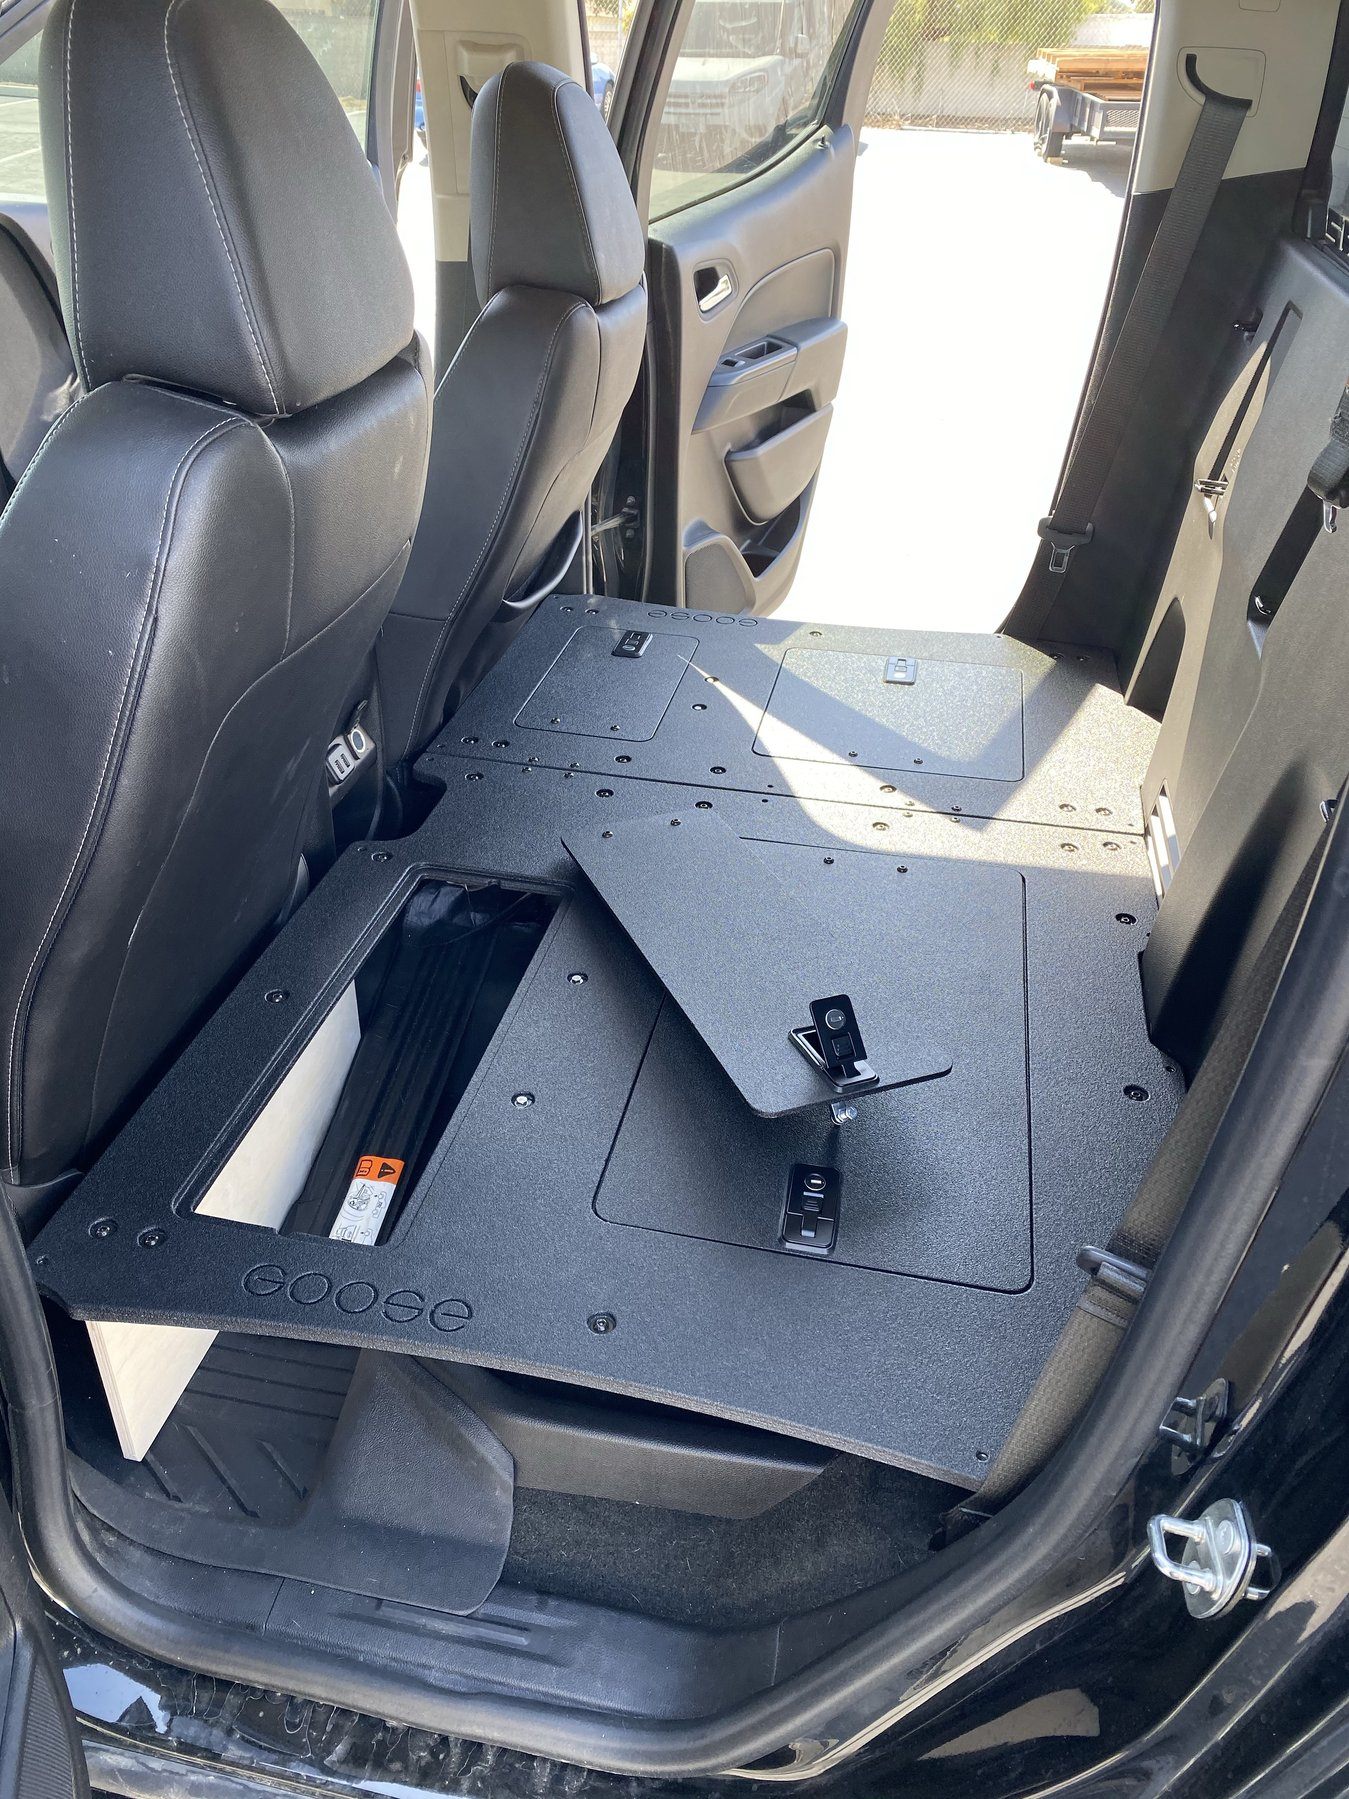 '15-22 Chevy Colorado (2nd Gen) Rear Seat Delete Interior Accessoires Goose Gear display